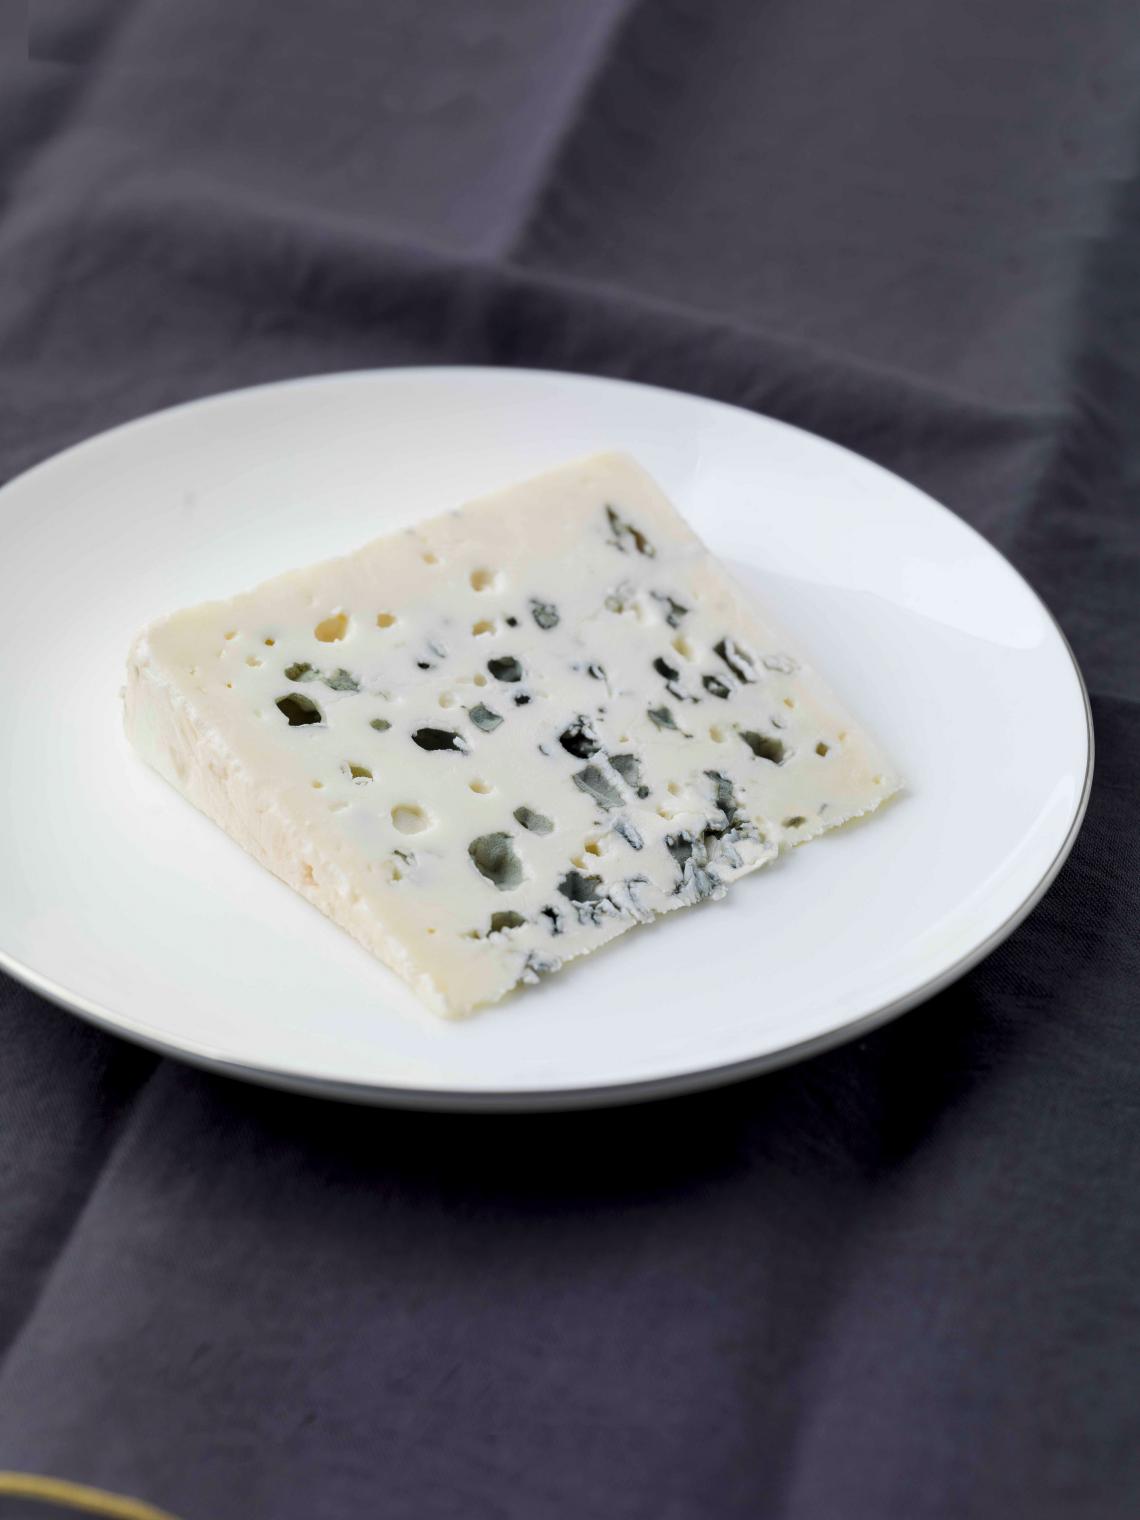 ILE DE FRANCE® Roquefort on a plate